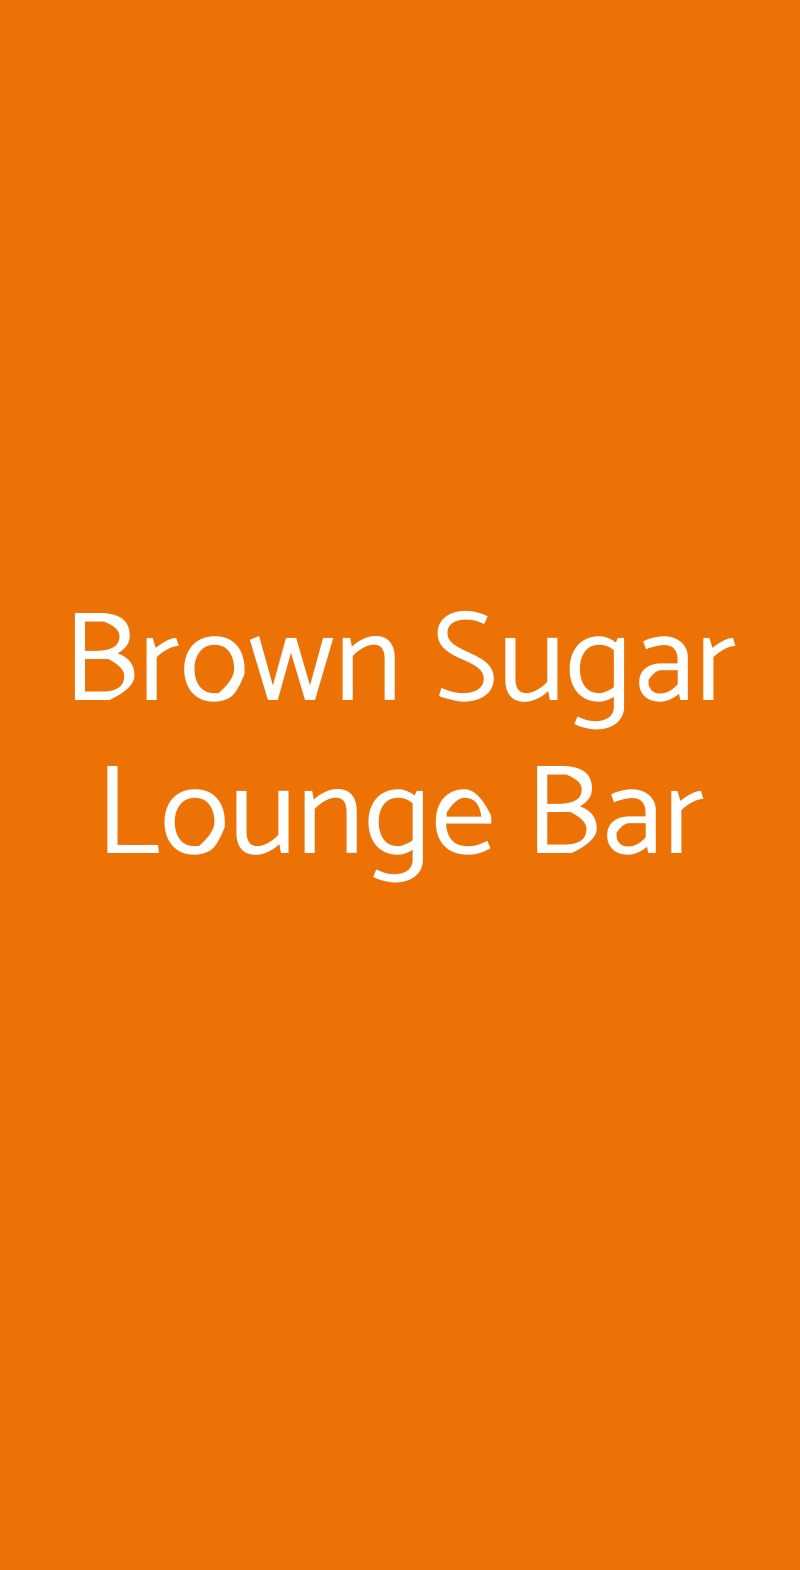 Brown Sugar Lounge Bar Firenze menù 1 pagina